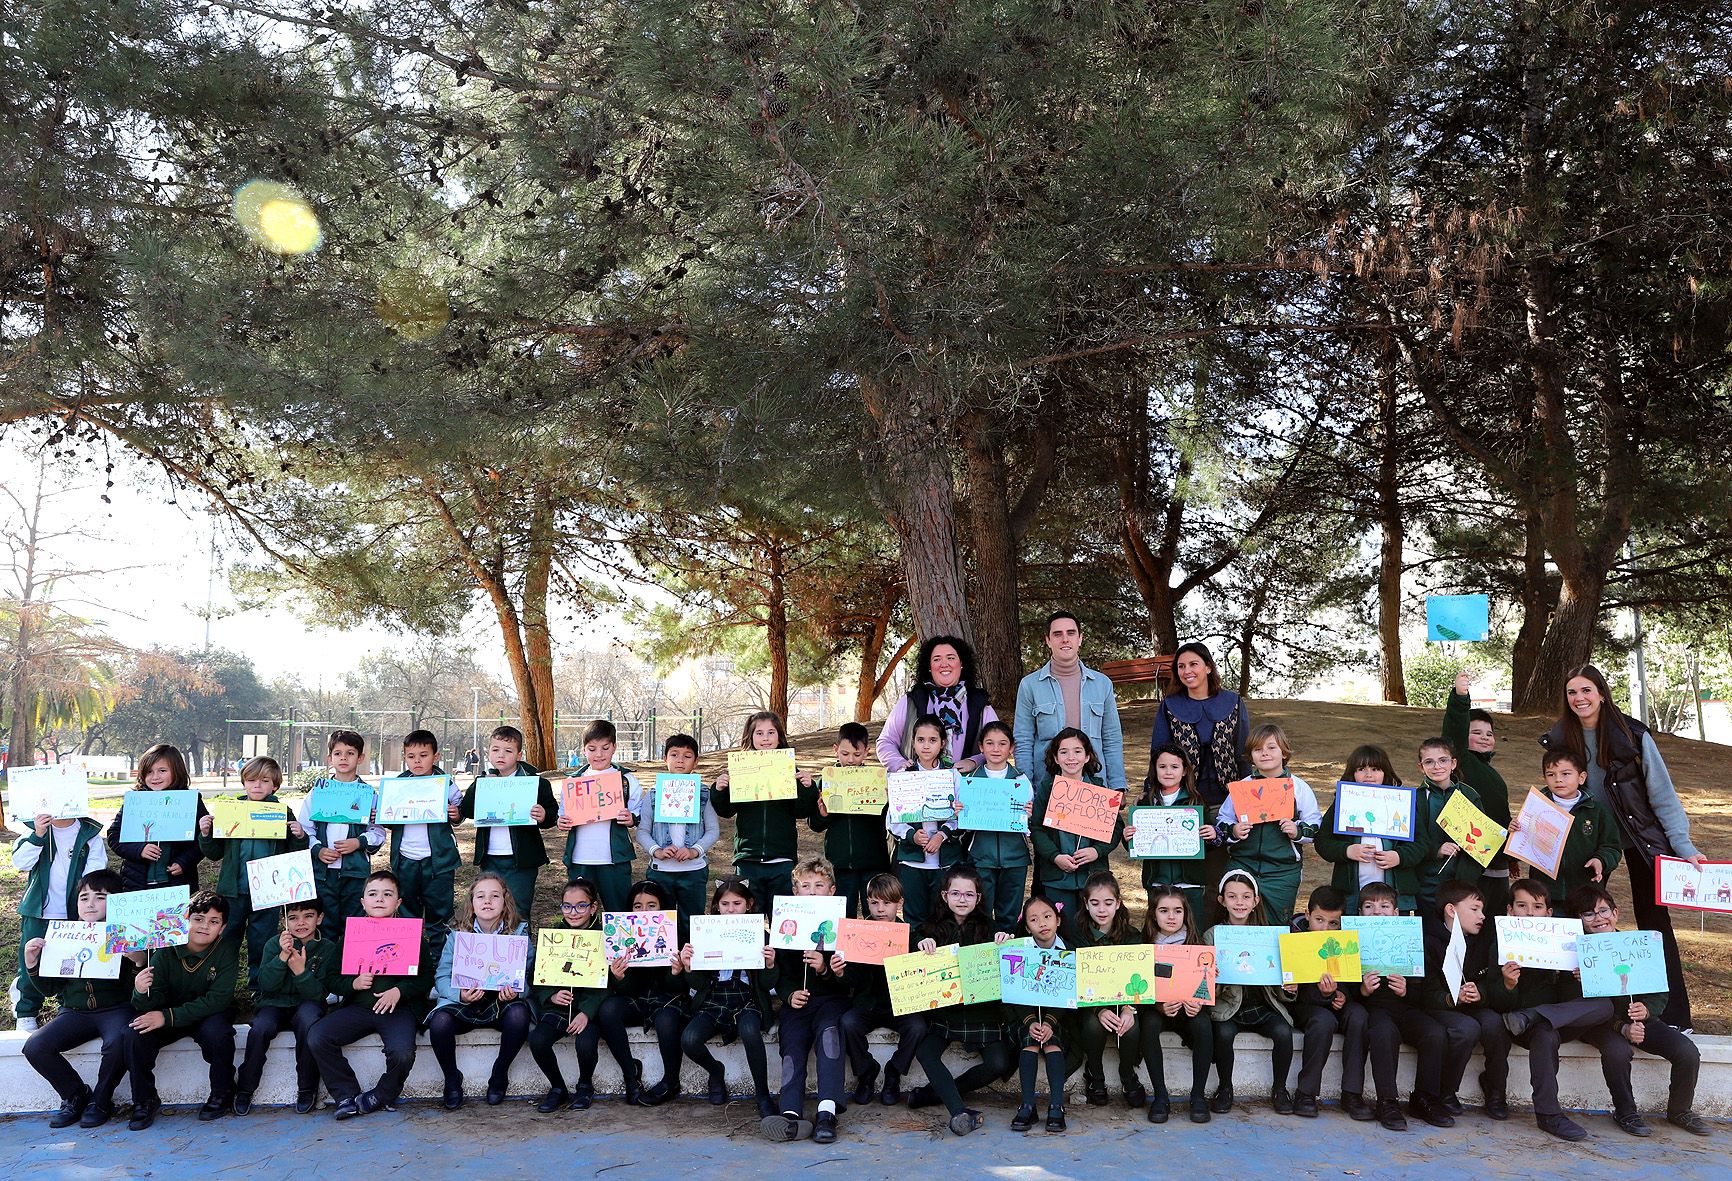 Los alumnos del colegio con sus carteles posando en el parque de La Plata.